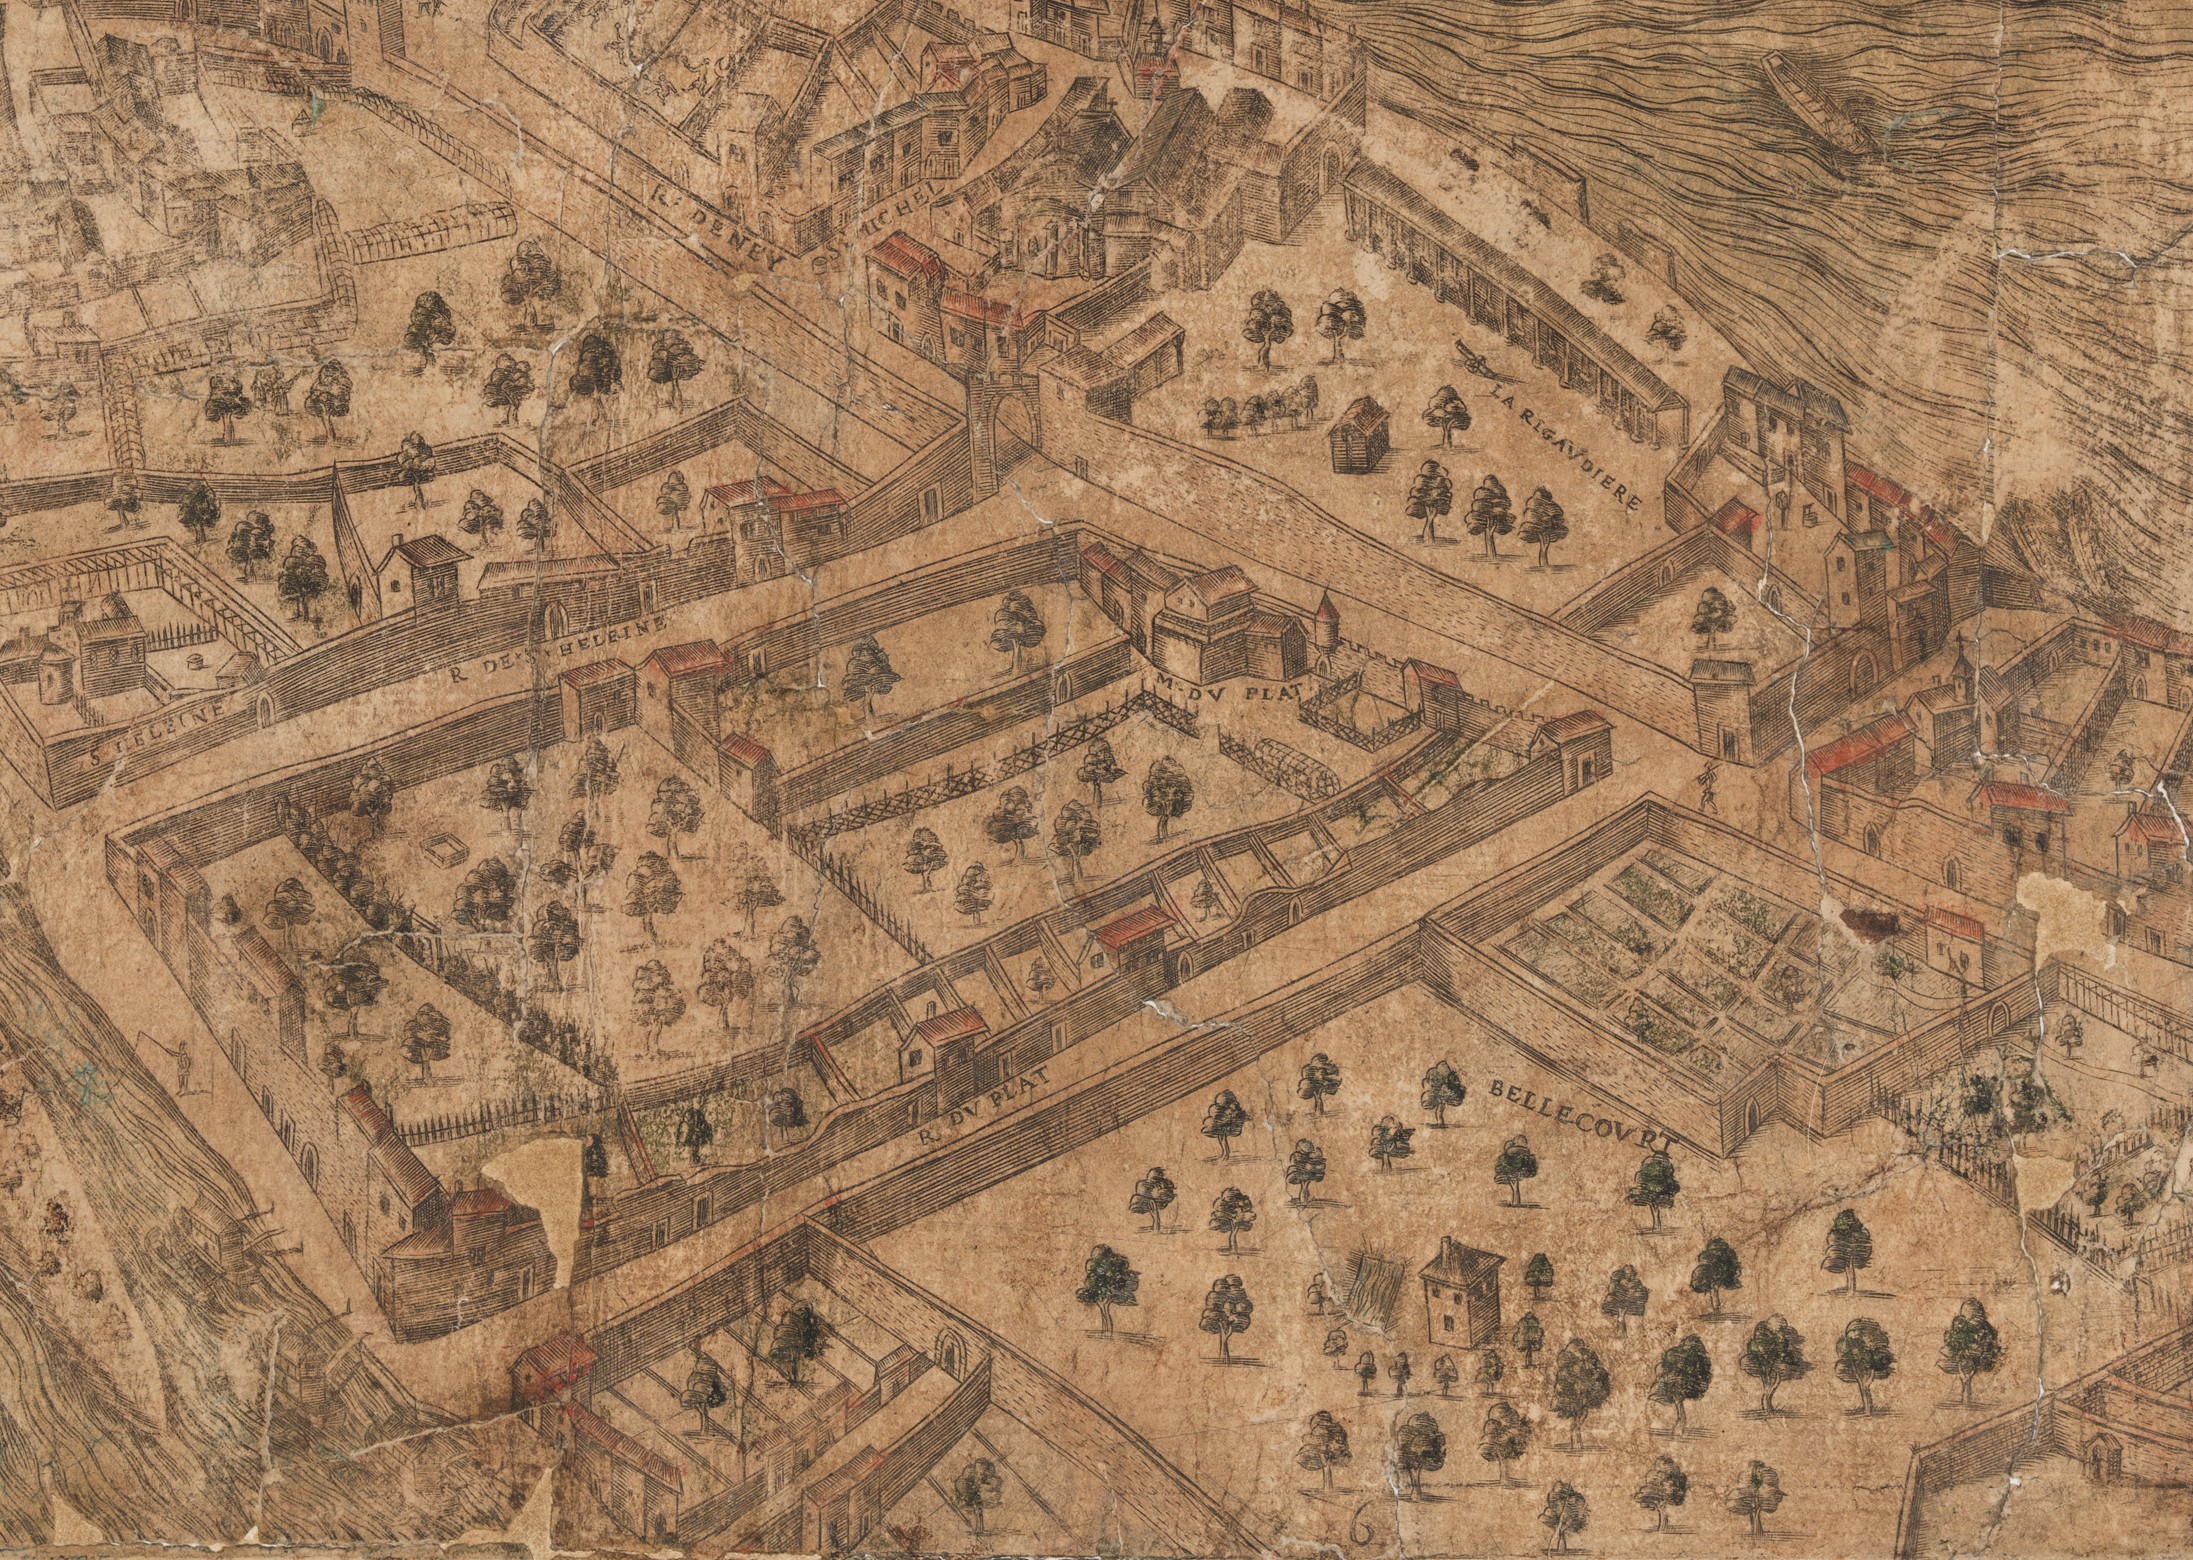 Plan scénographique de Lyon, Bellecour : gravure réhaussée à la gouache (vers 1550, cote 2SAT/3, pl. 6, détail)